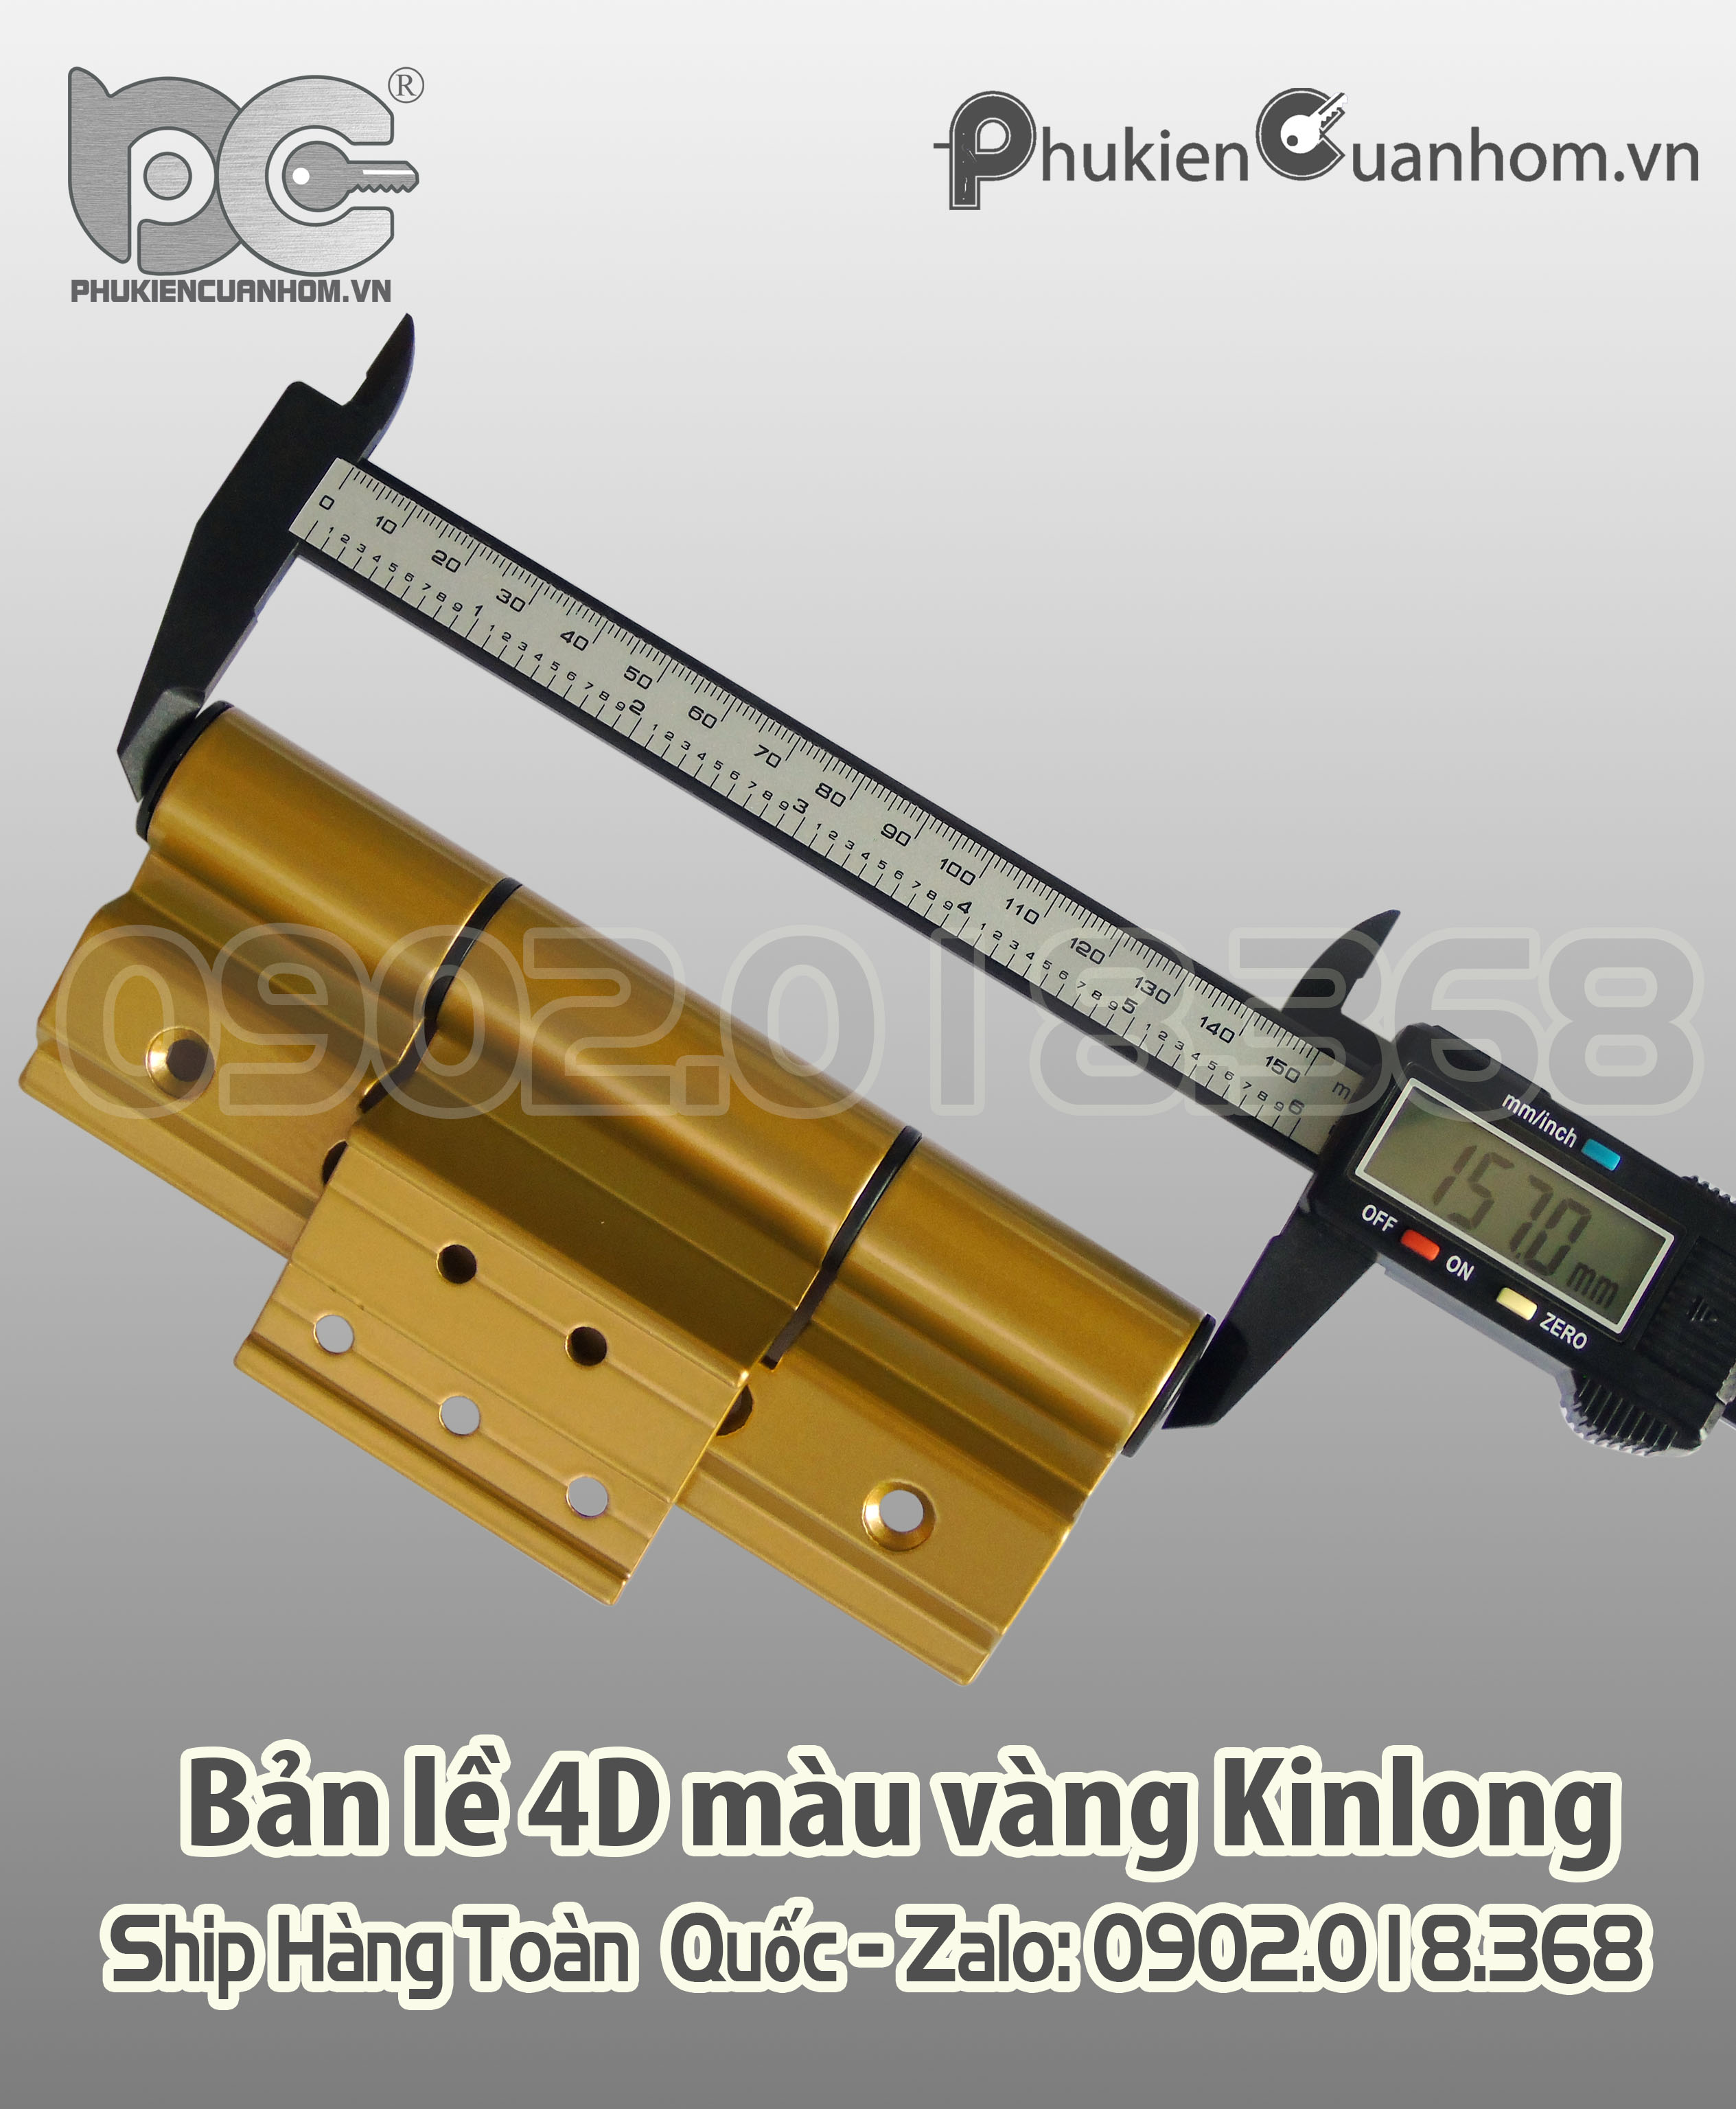 Bản lề 4D màu vàng hiệu KinLong chính hãng nhôm Xingfa hệ 55